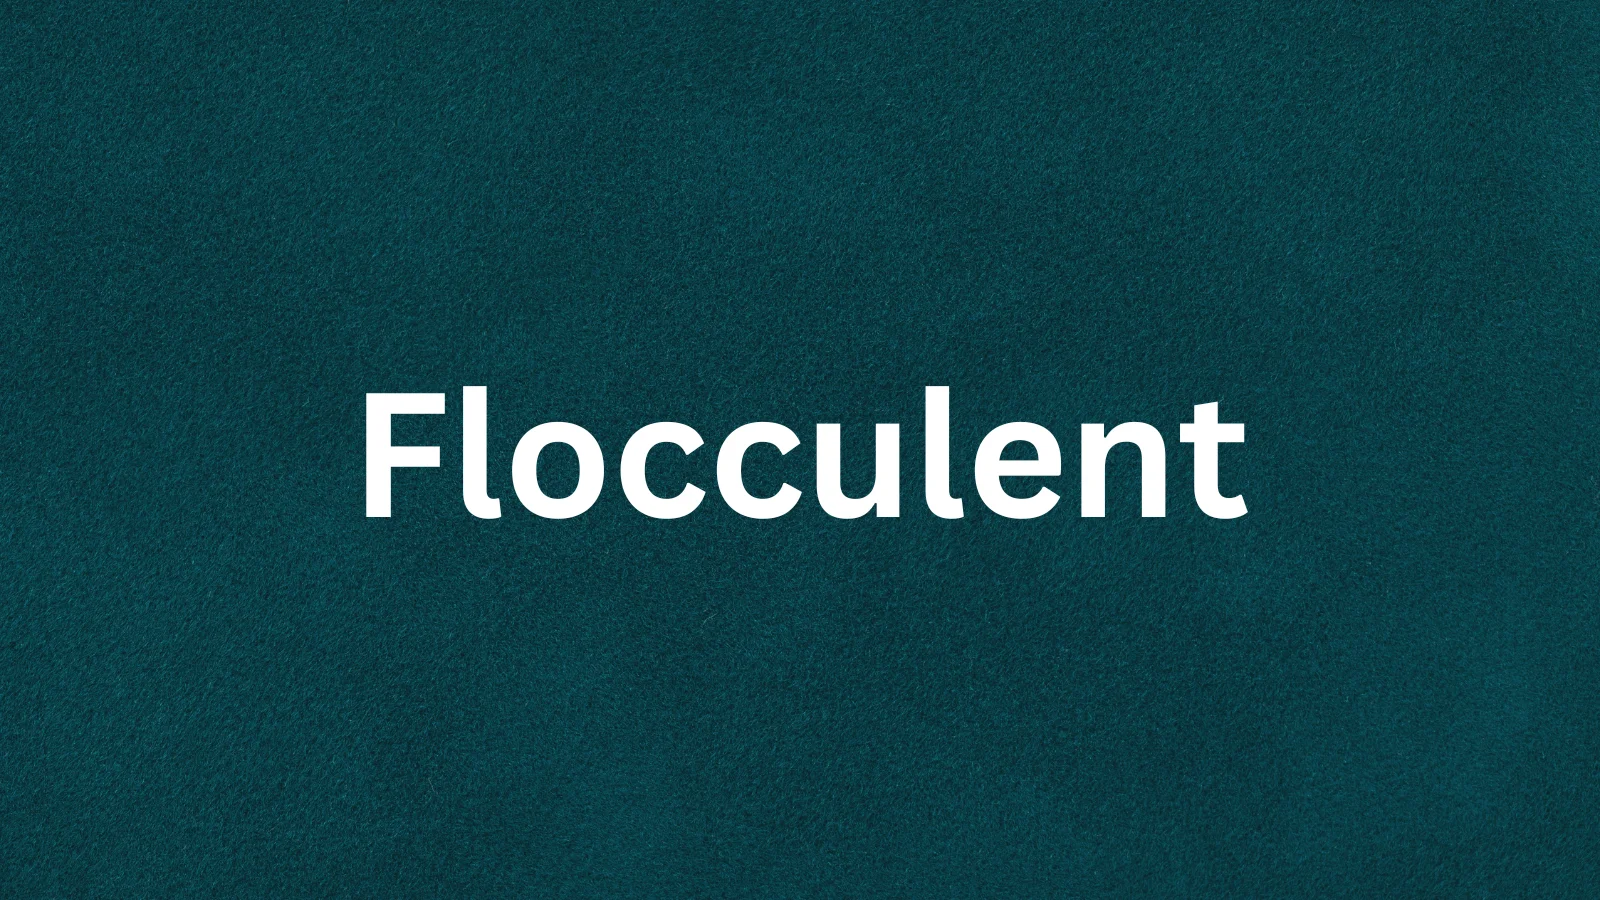 Flocculent